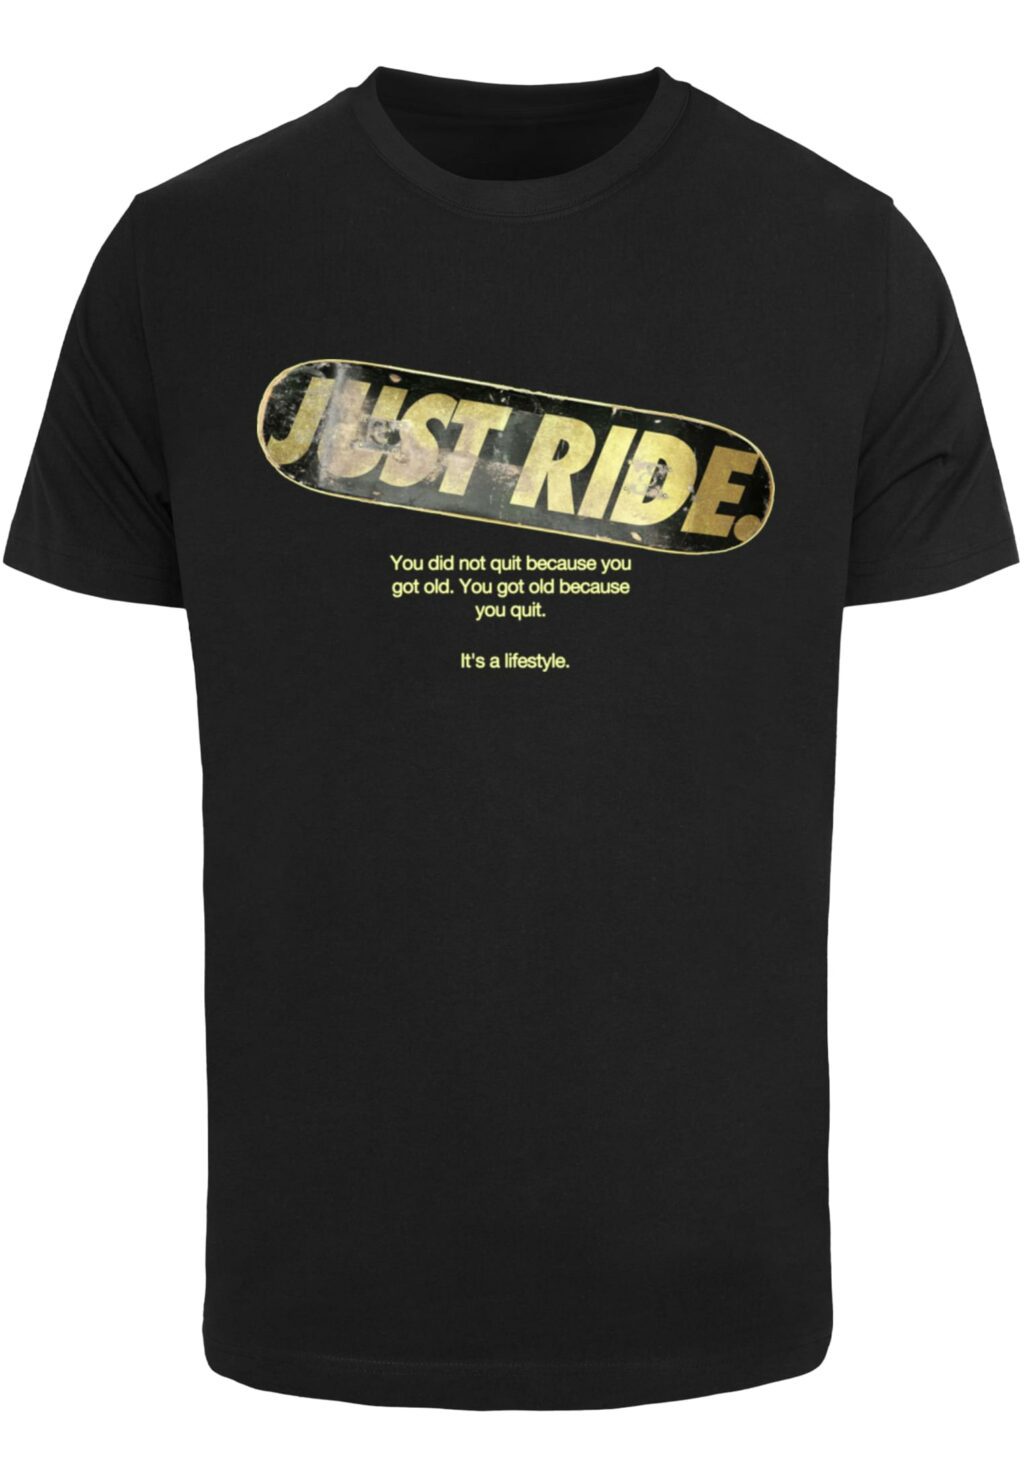 Just Ride Tee black MT2671